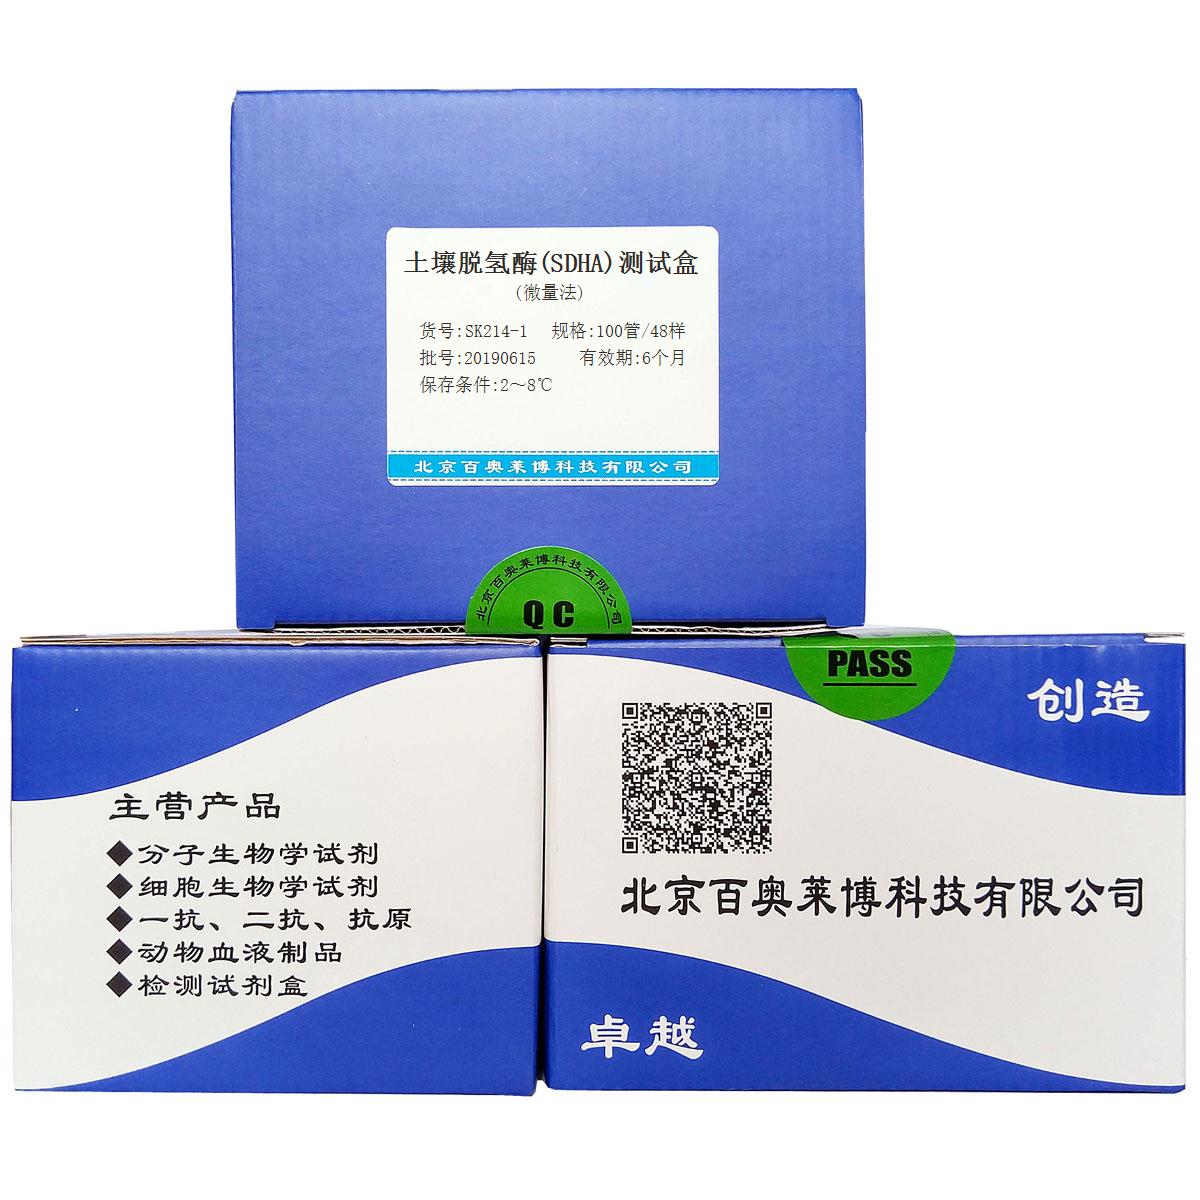 土壤脱氢酶(SDHA)测试盒(微量法)北京厂家